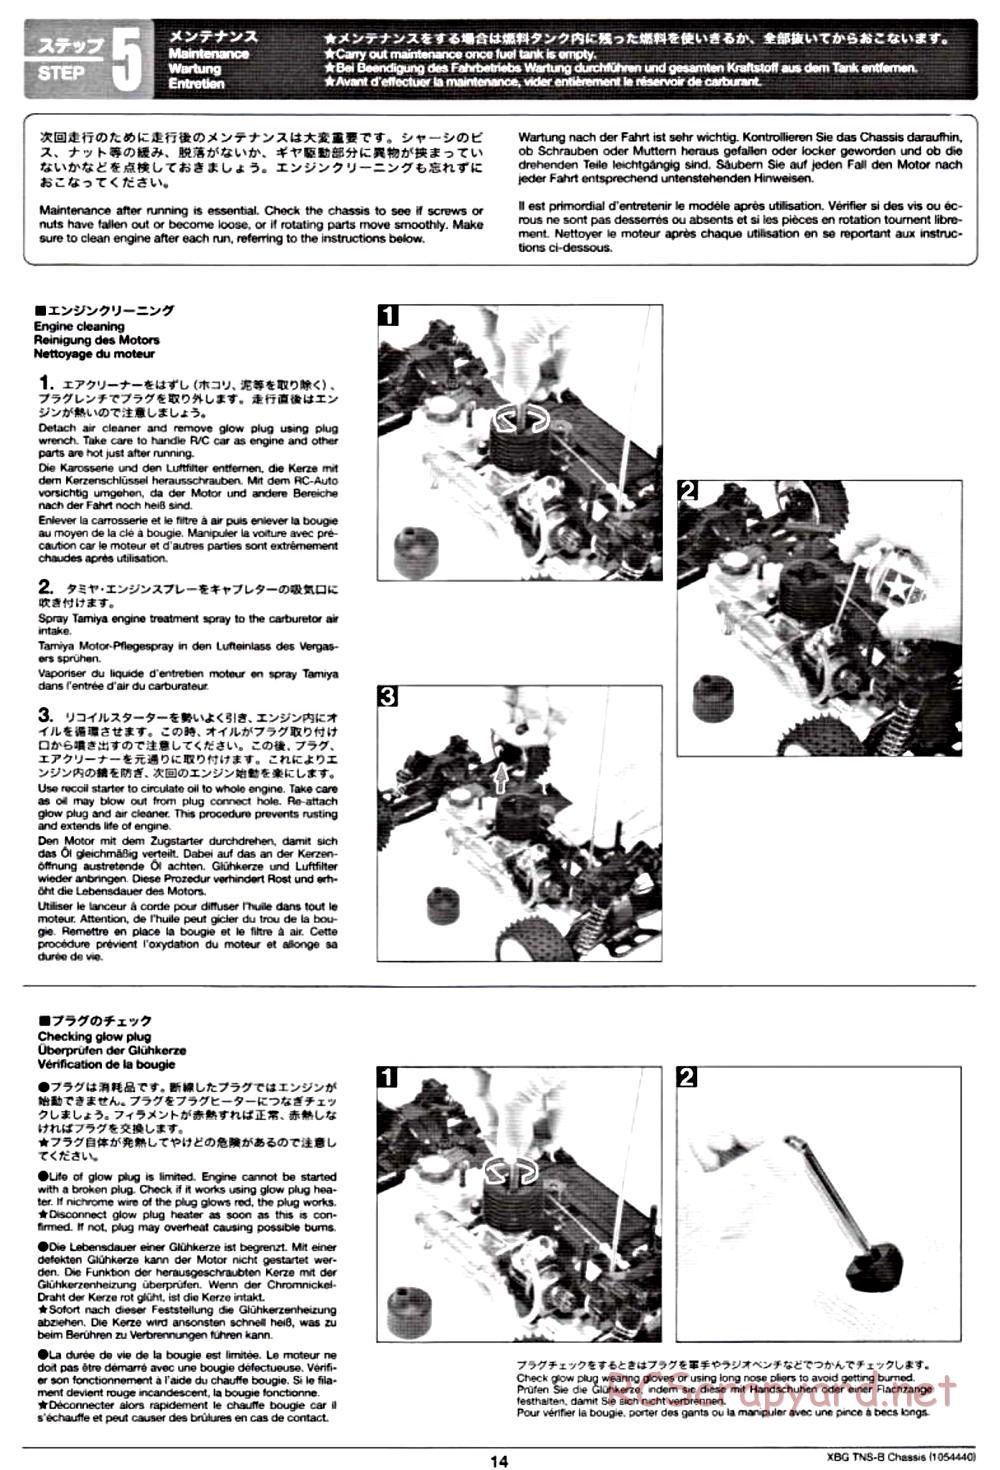 Tamiya - TNS-B Chassis - Manual - Page 14